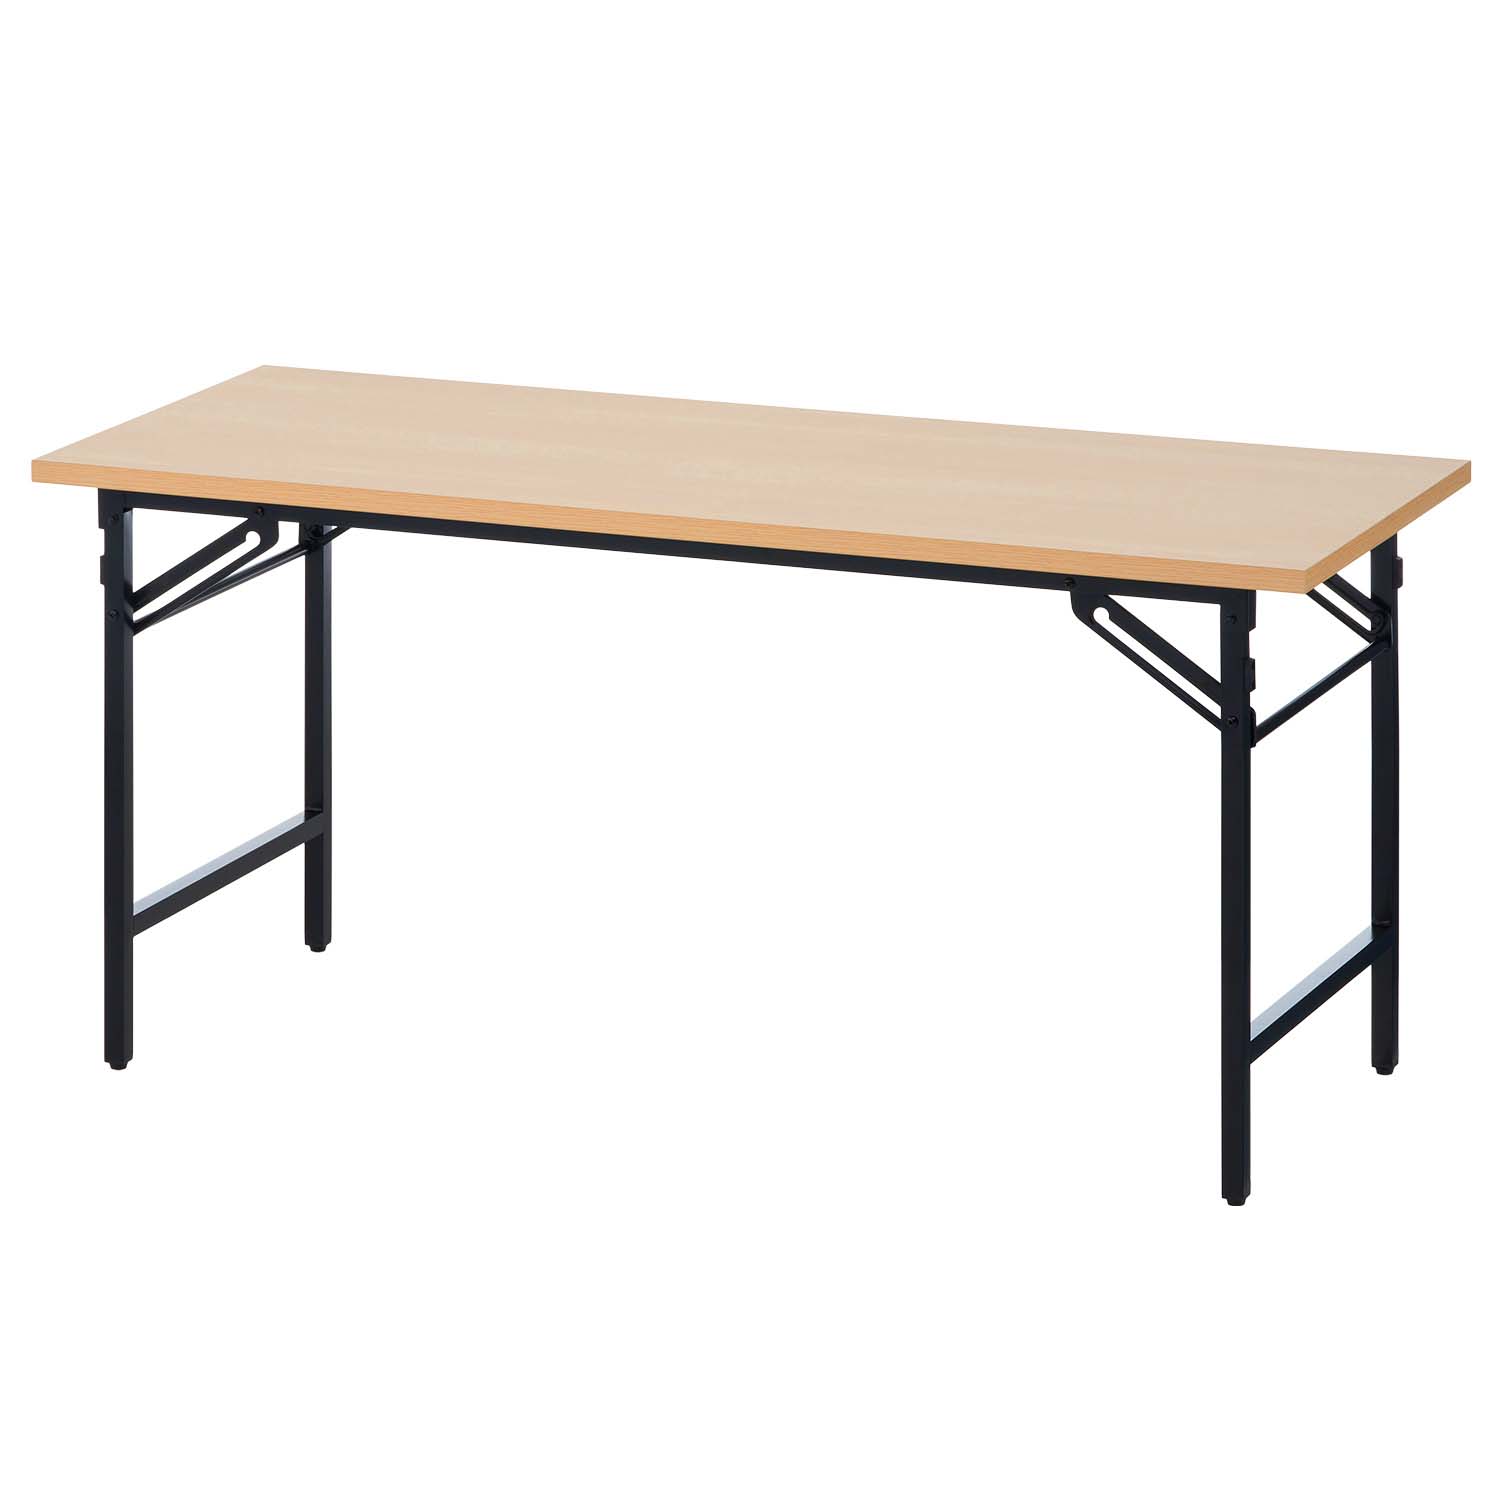 法人様限定 会議用テーブル 折りたたみテーブル 棚無し 幅1500×奥行600